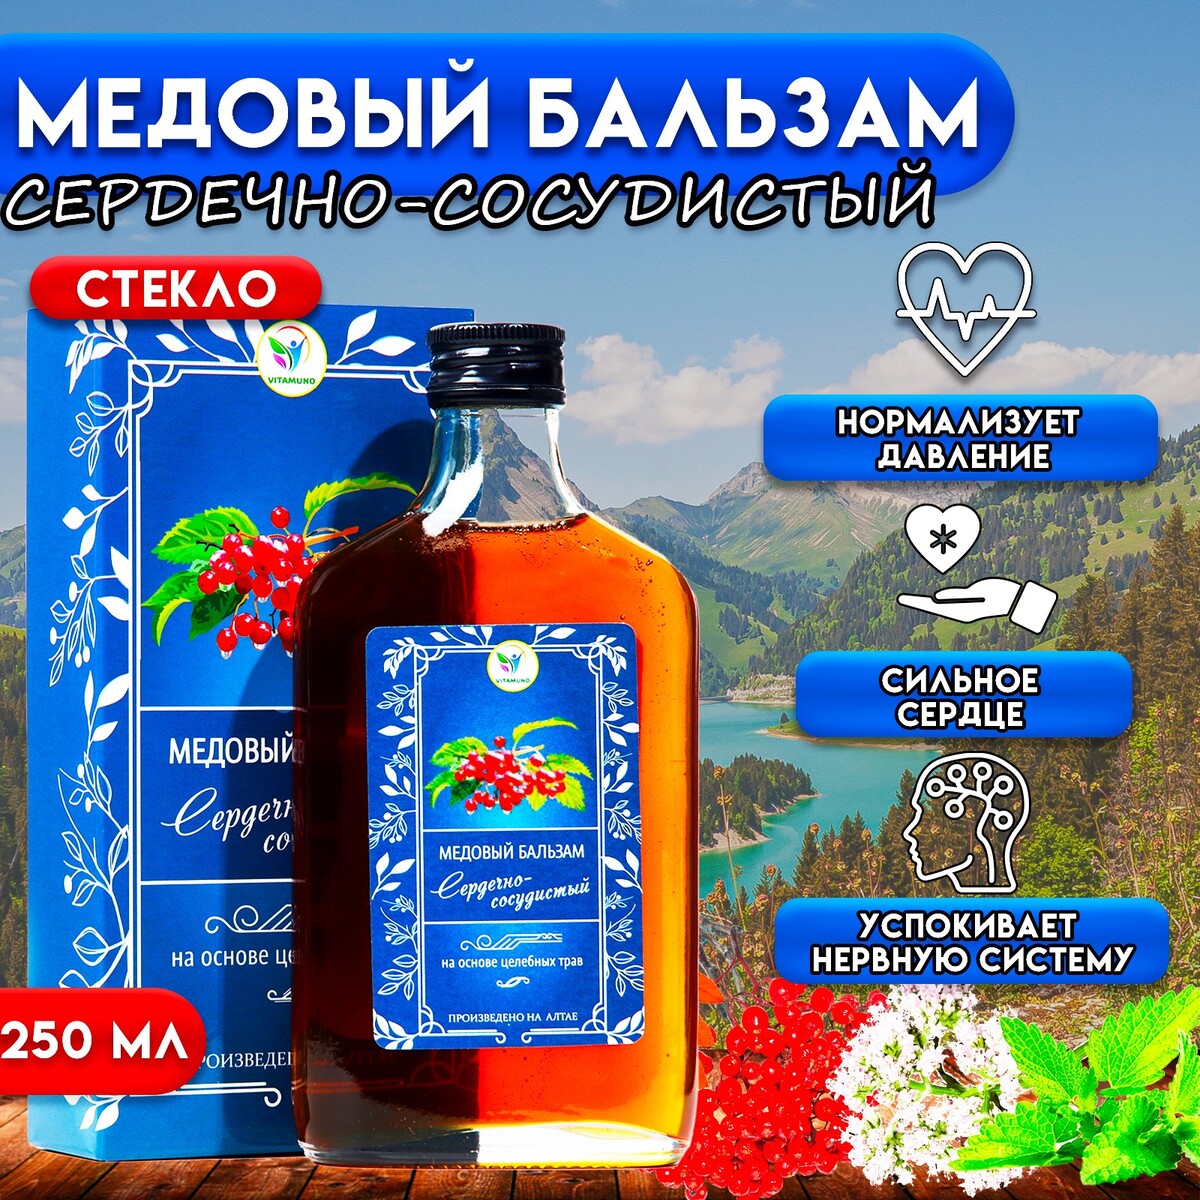 Бальзам медовый безалкогольный vitamuno сердечно-сосудистый, 250 мл витамин d3 vitamuno для взрослых и детей 30 шт по 260 мг